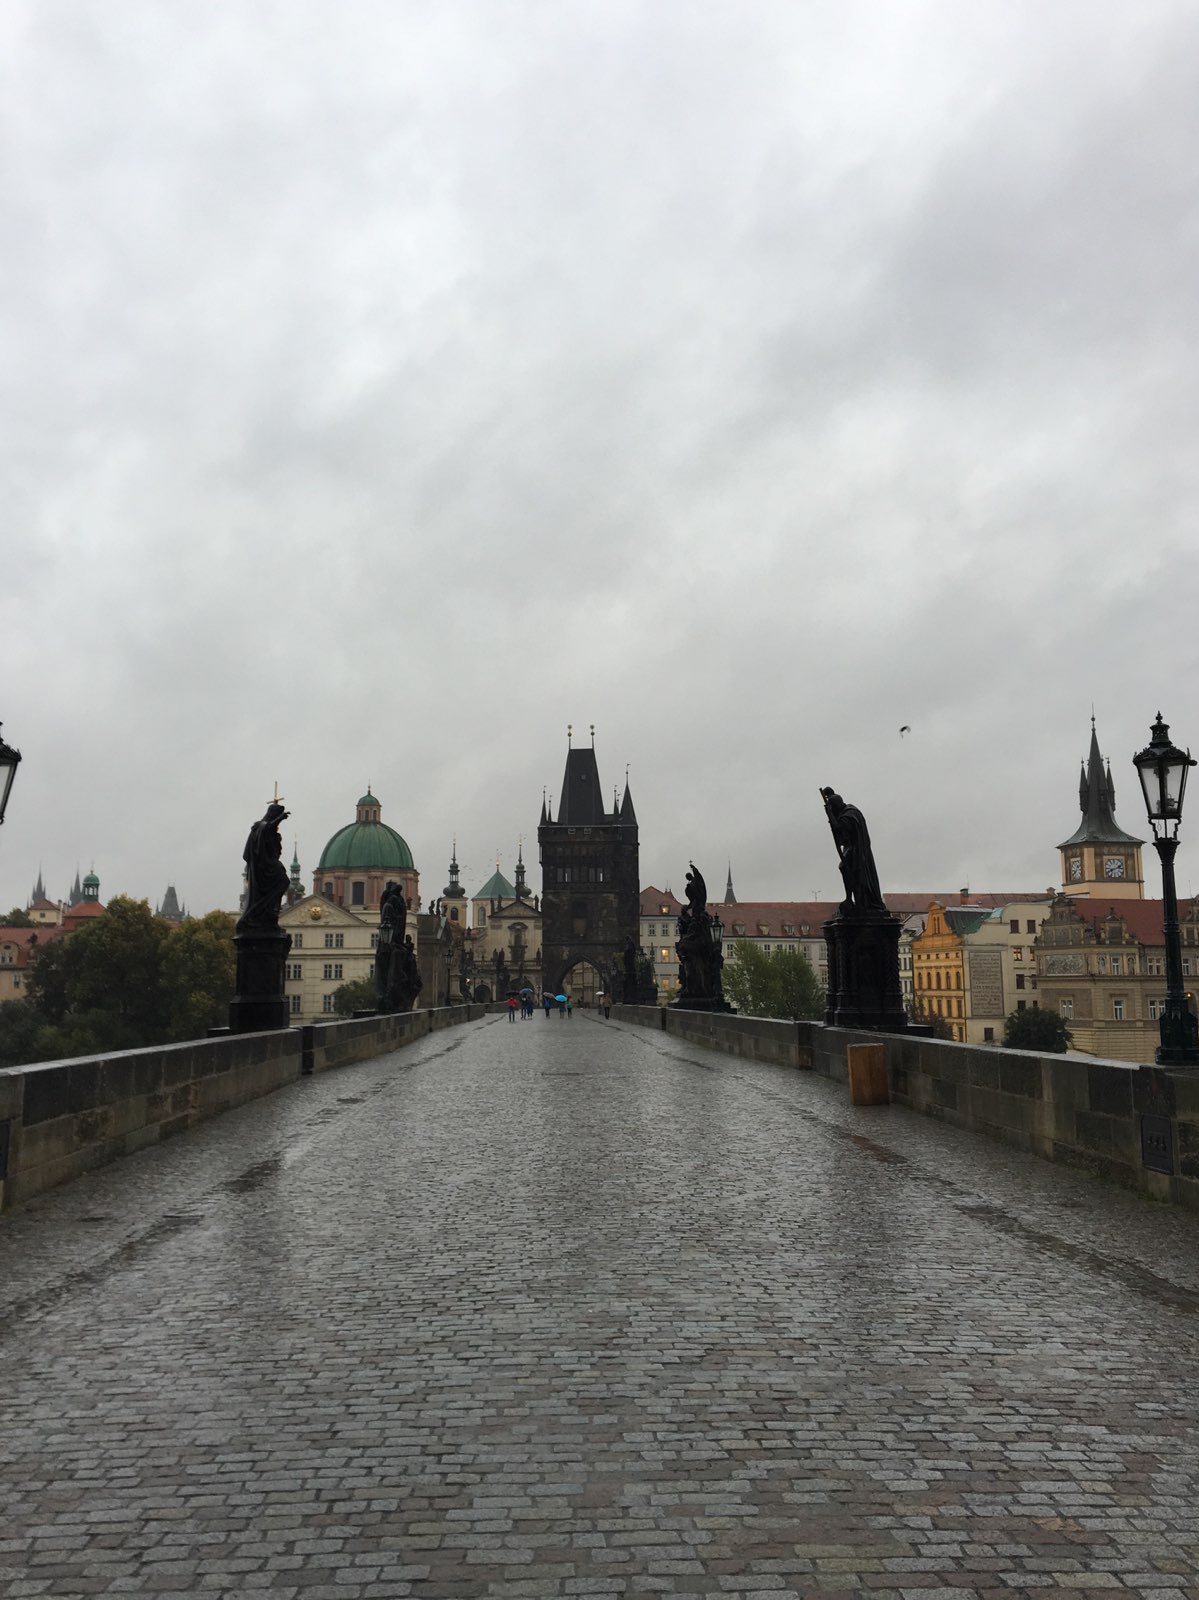 提起布拉格人人都会想到的地方。两端分别是布拉格城堡区和旧城区，以前这里